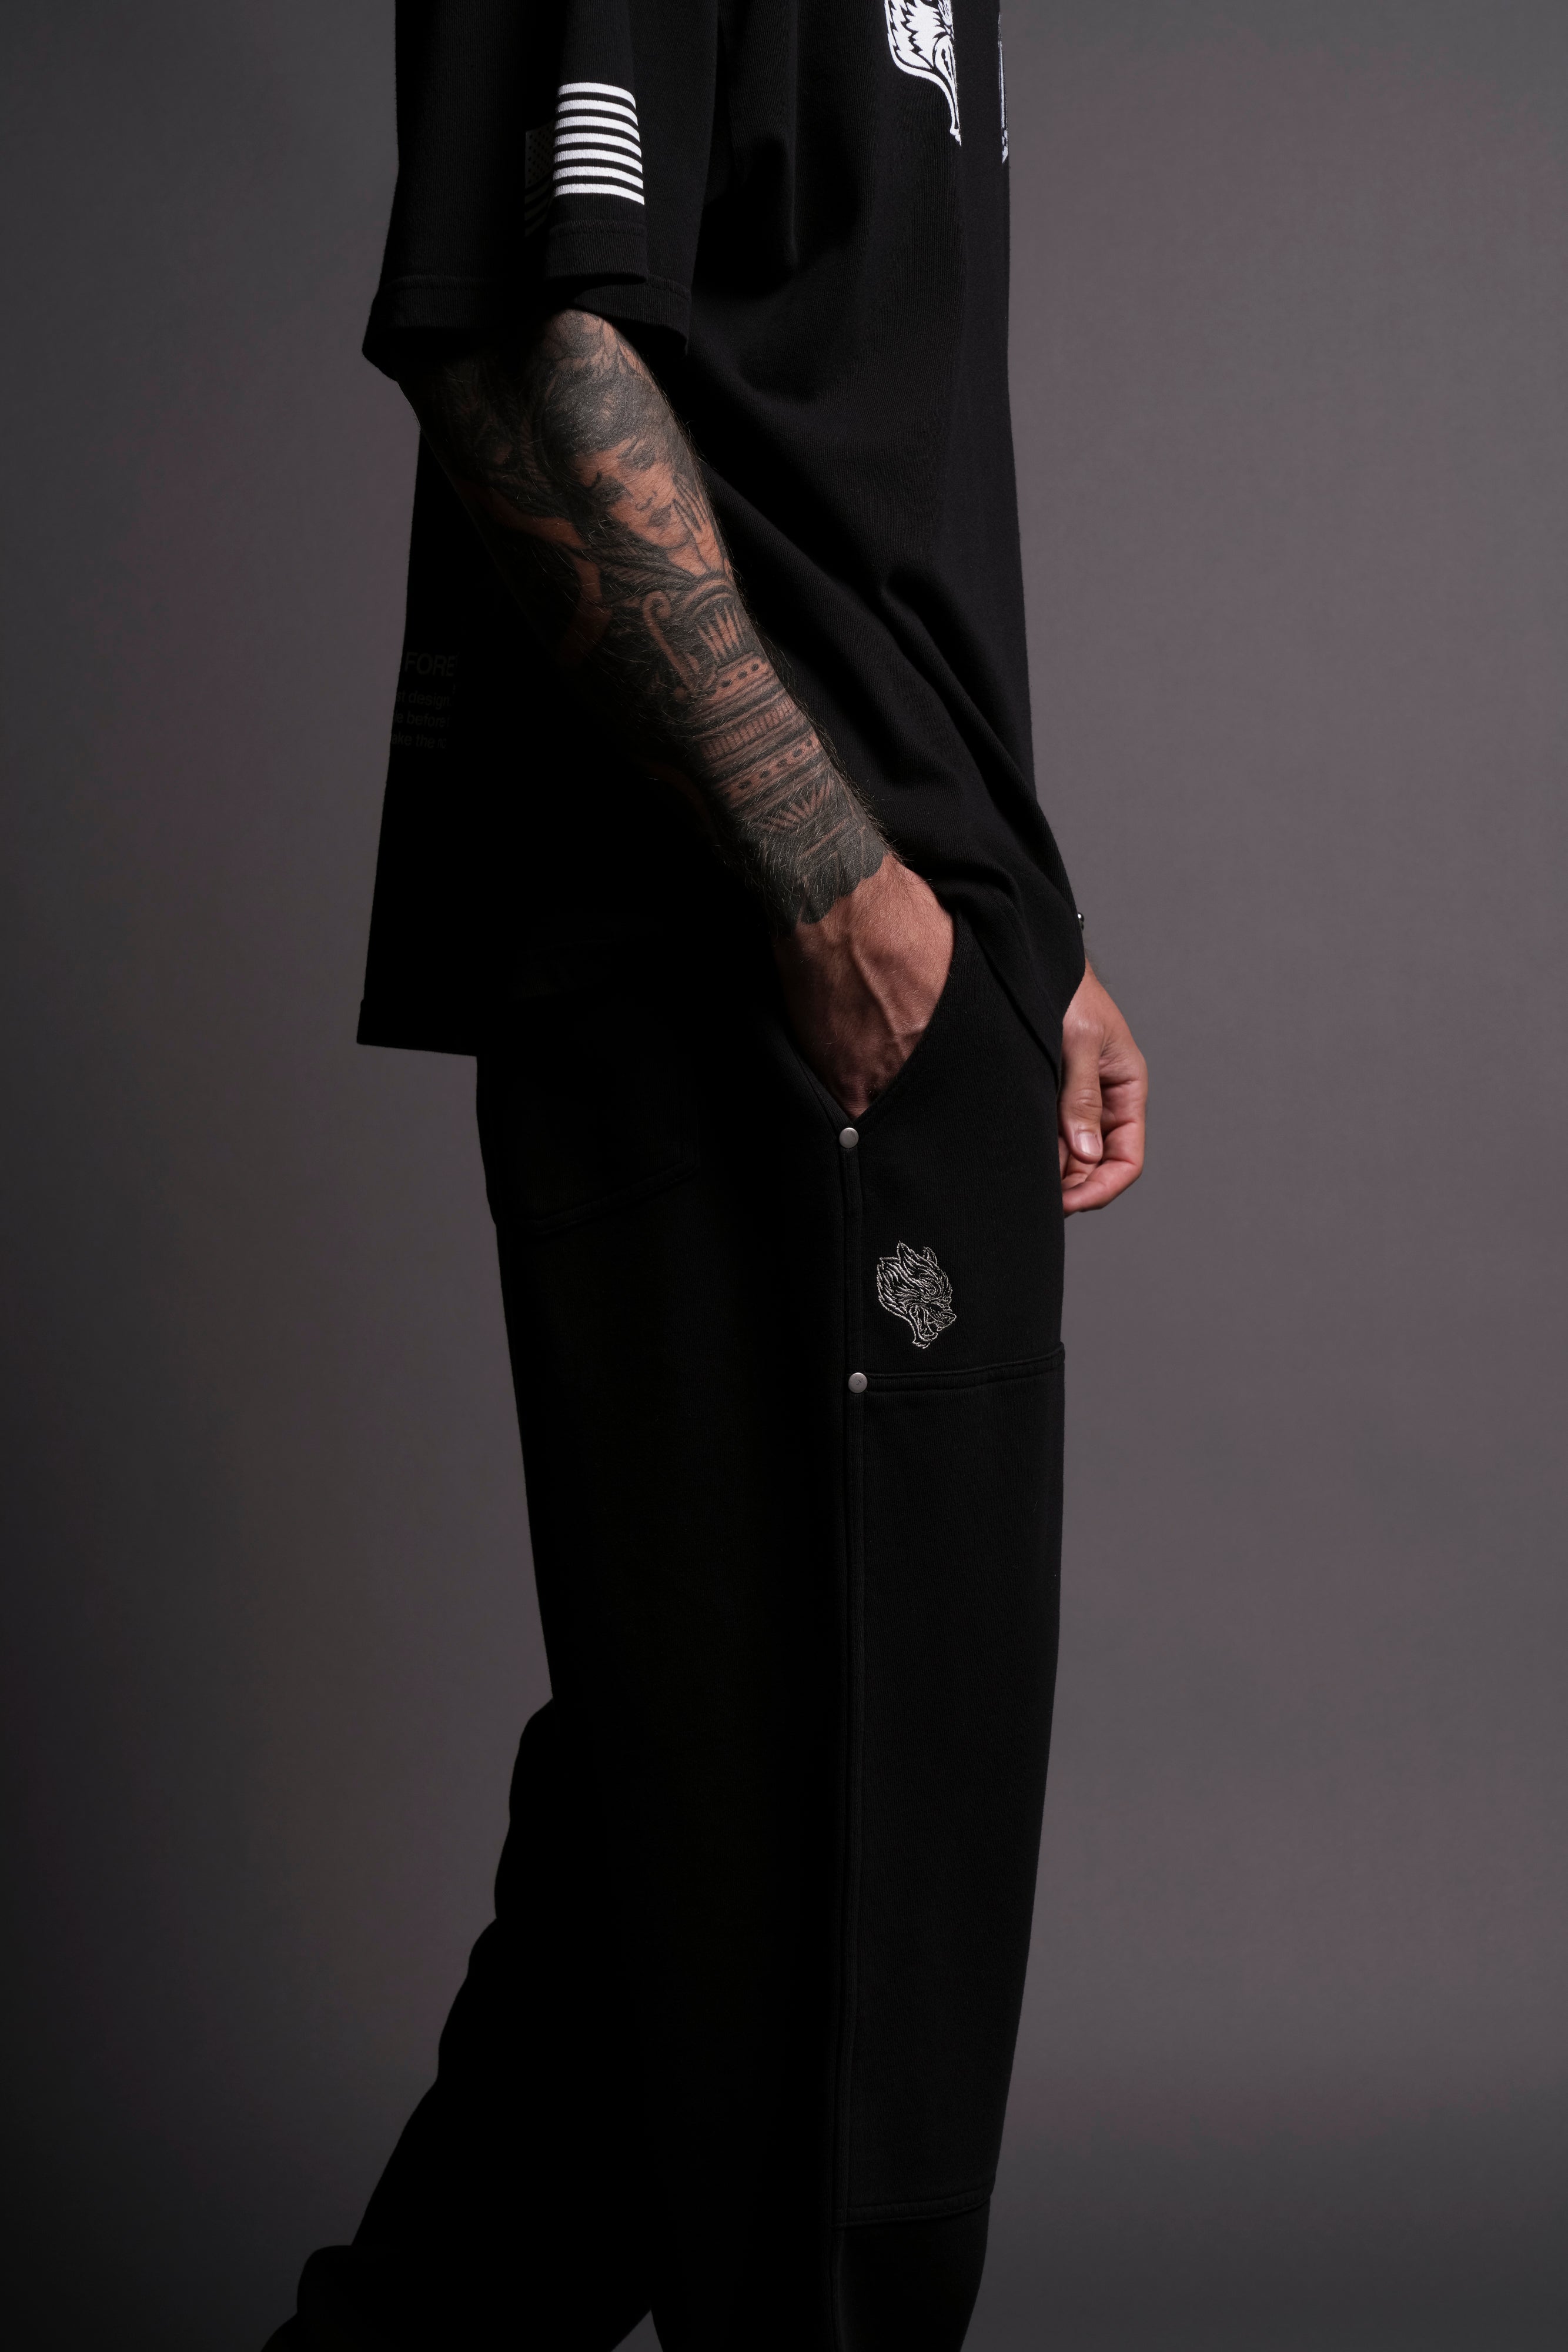 Dual Rivet Fleece Sweat Pants in Black – DarcSport